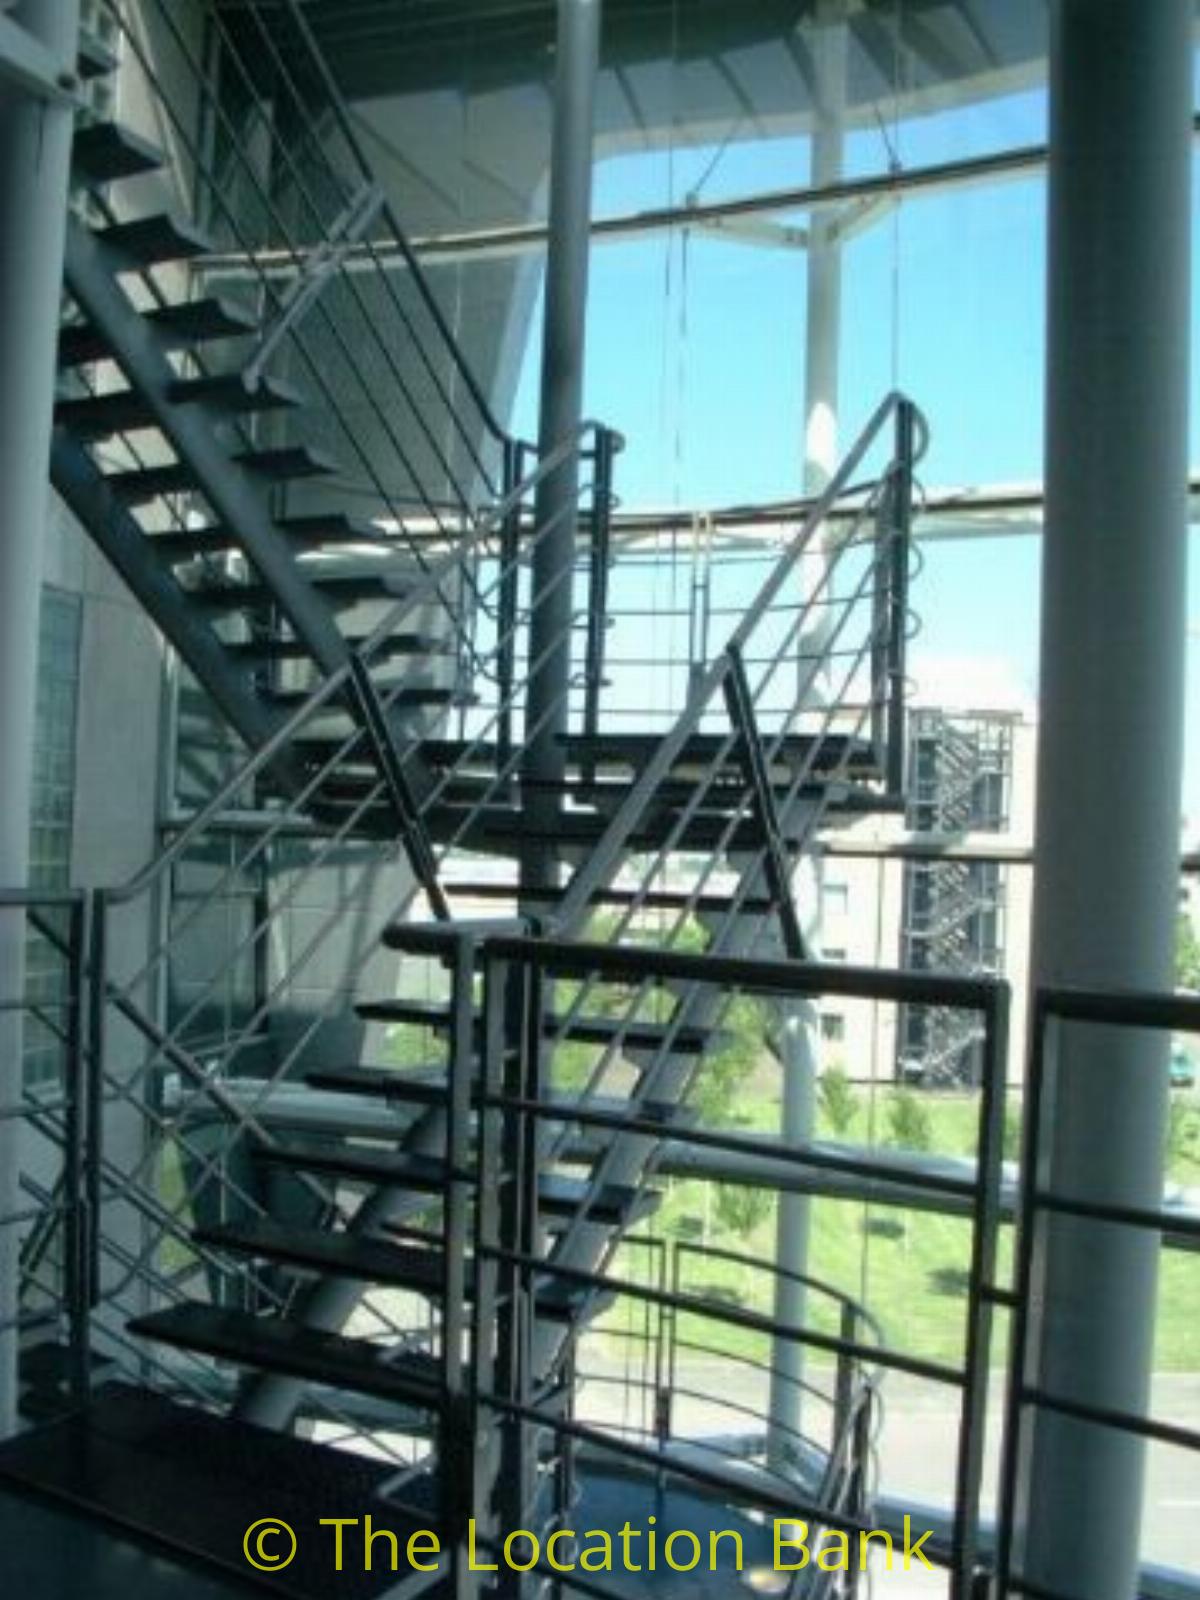 trappenhuis trappen